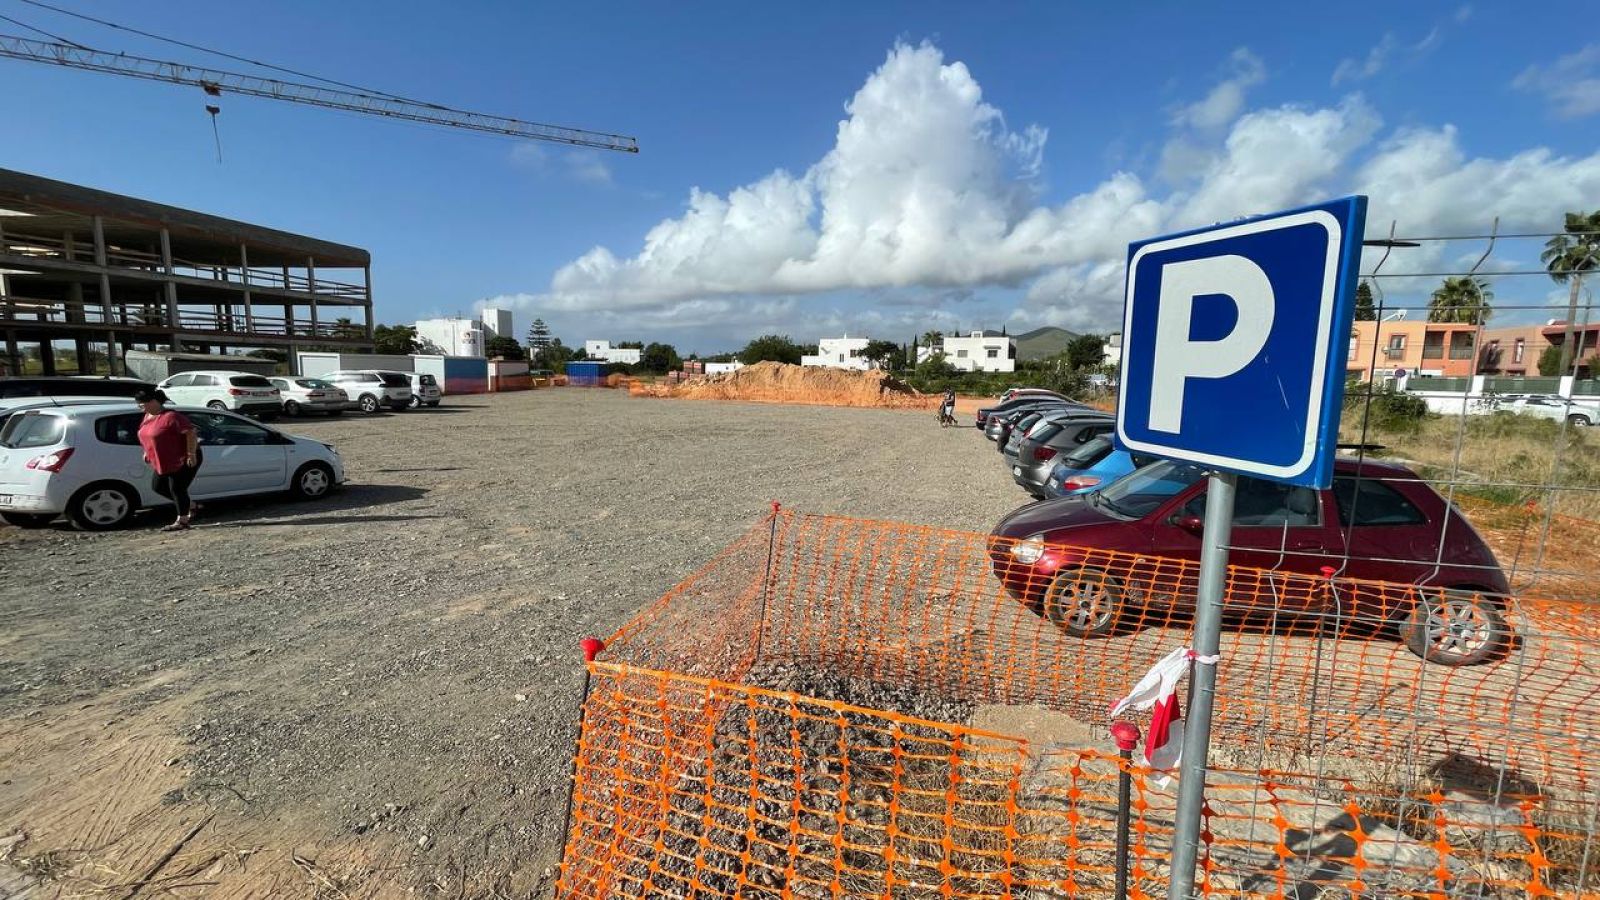 Santa Eulària finaliza el acondicionamiento de dos parkings gratuitos en Jesús y suma casi 200 plazas más en 2022